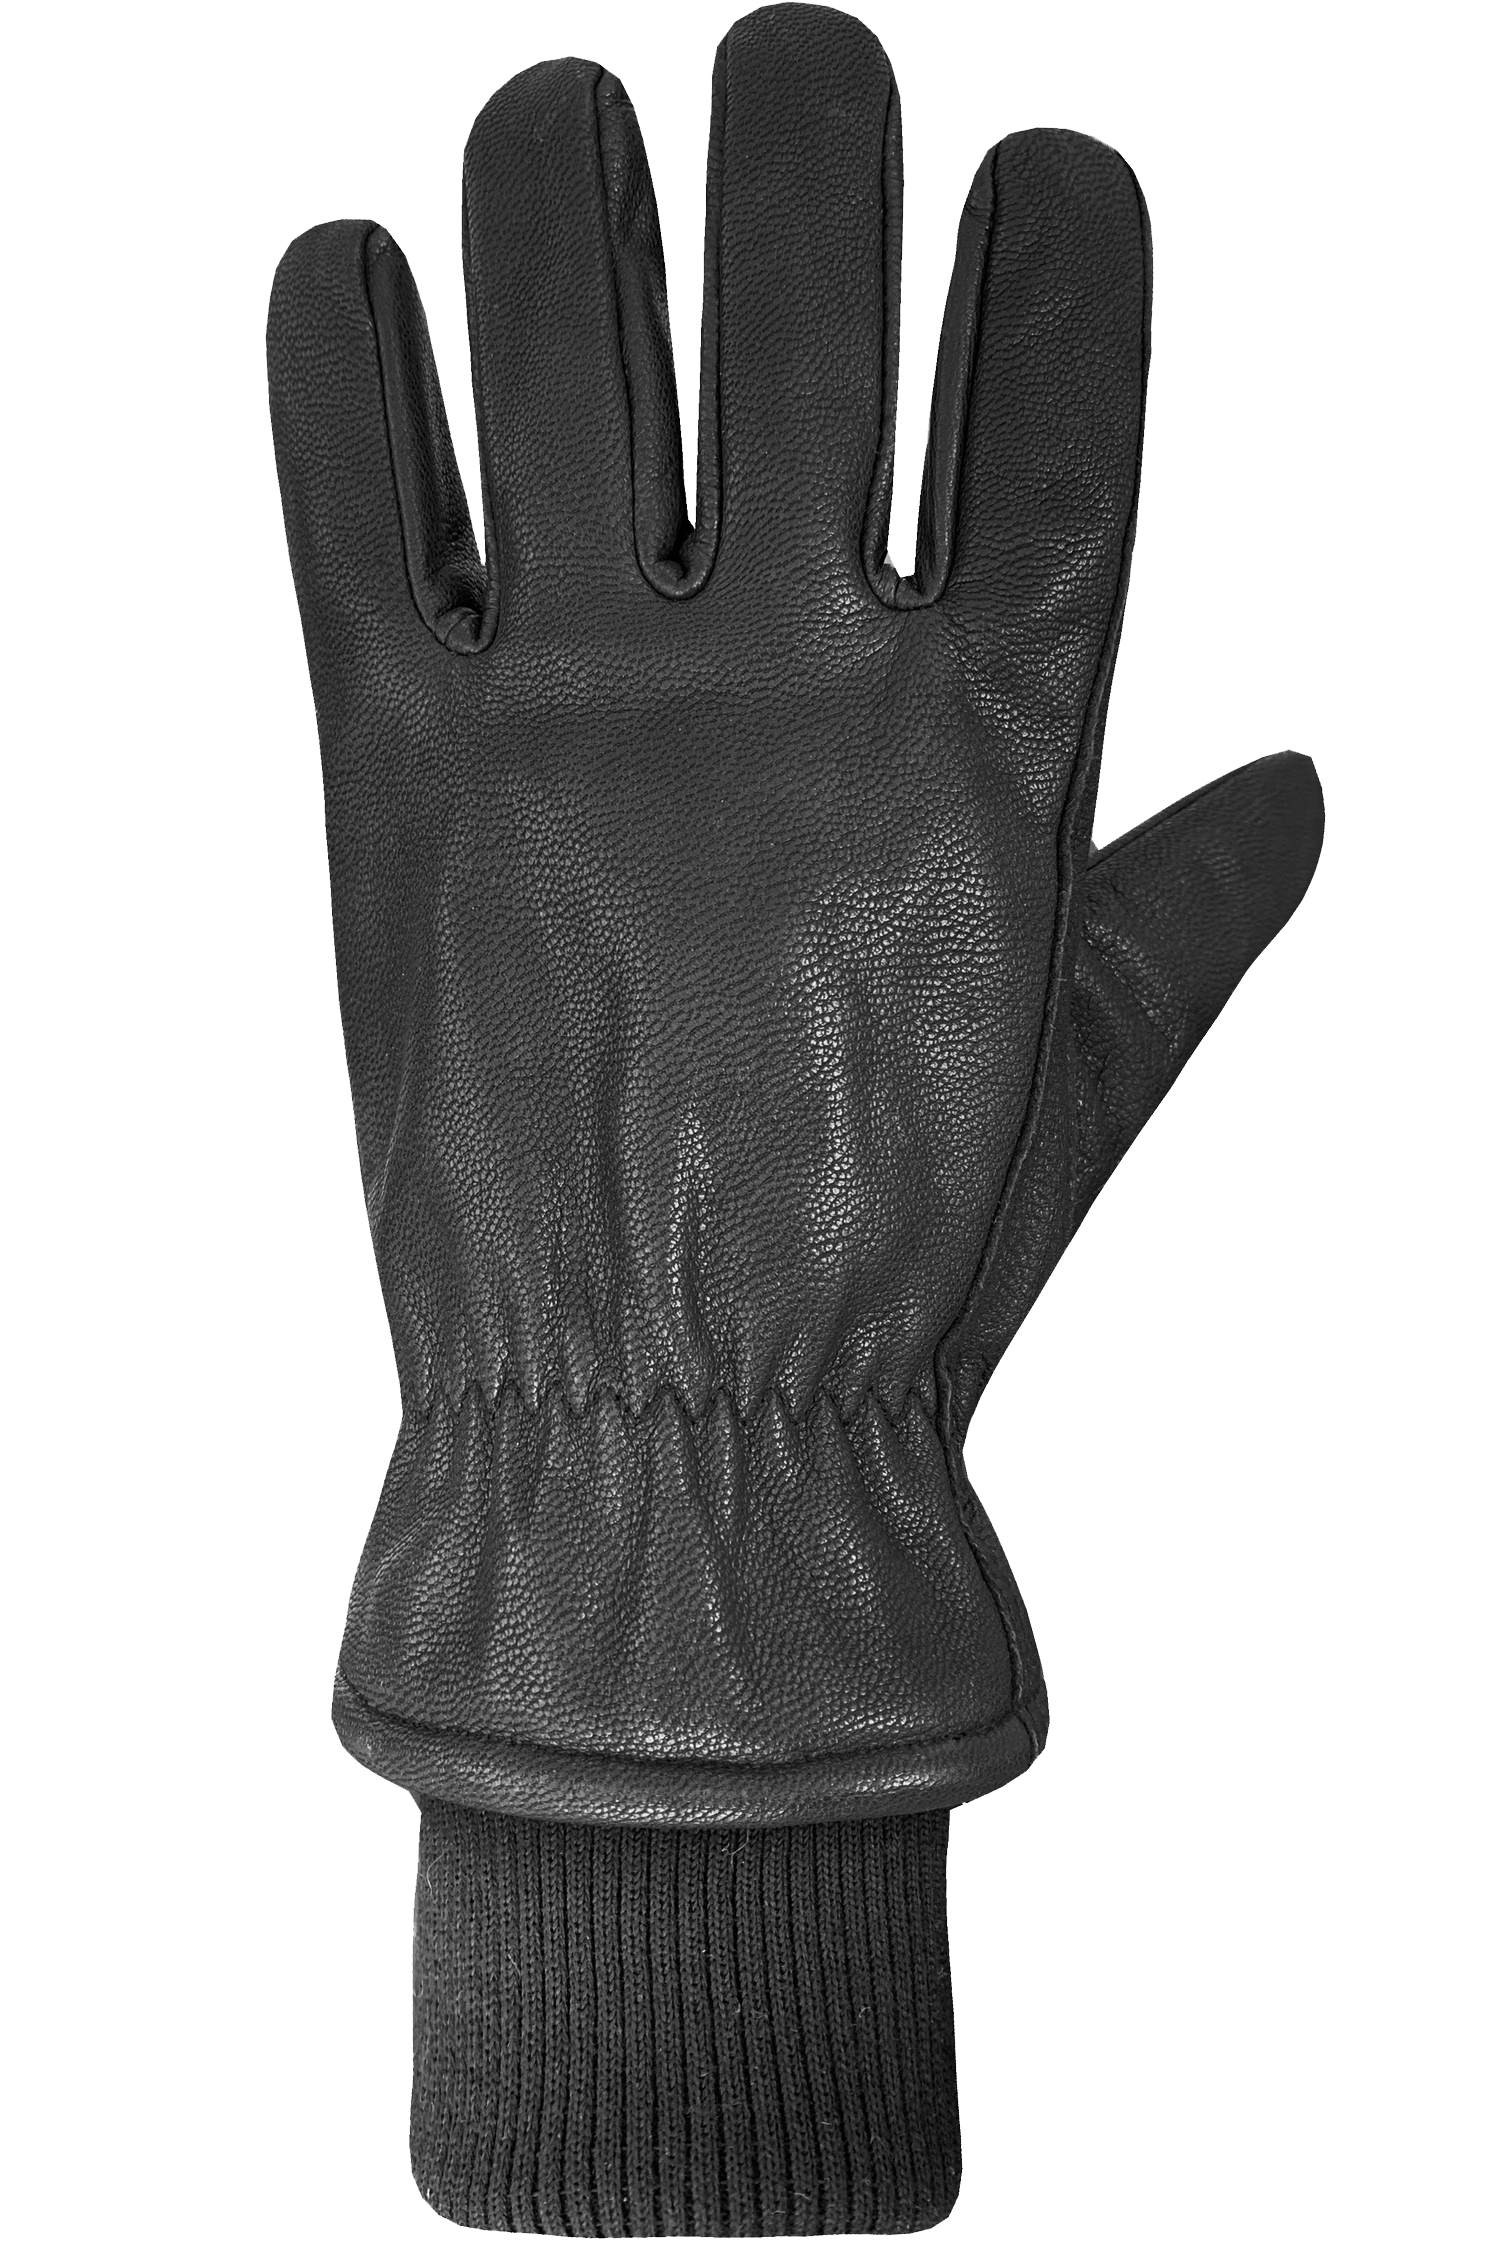 Colton Gloves - Men-Glove-Auclair-XL-BLACK-Auclair Sports